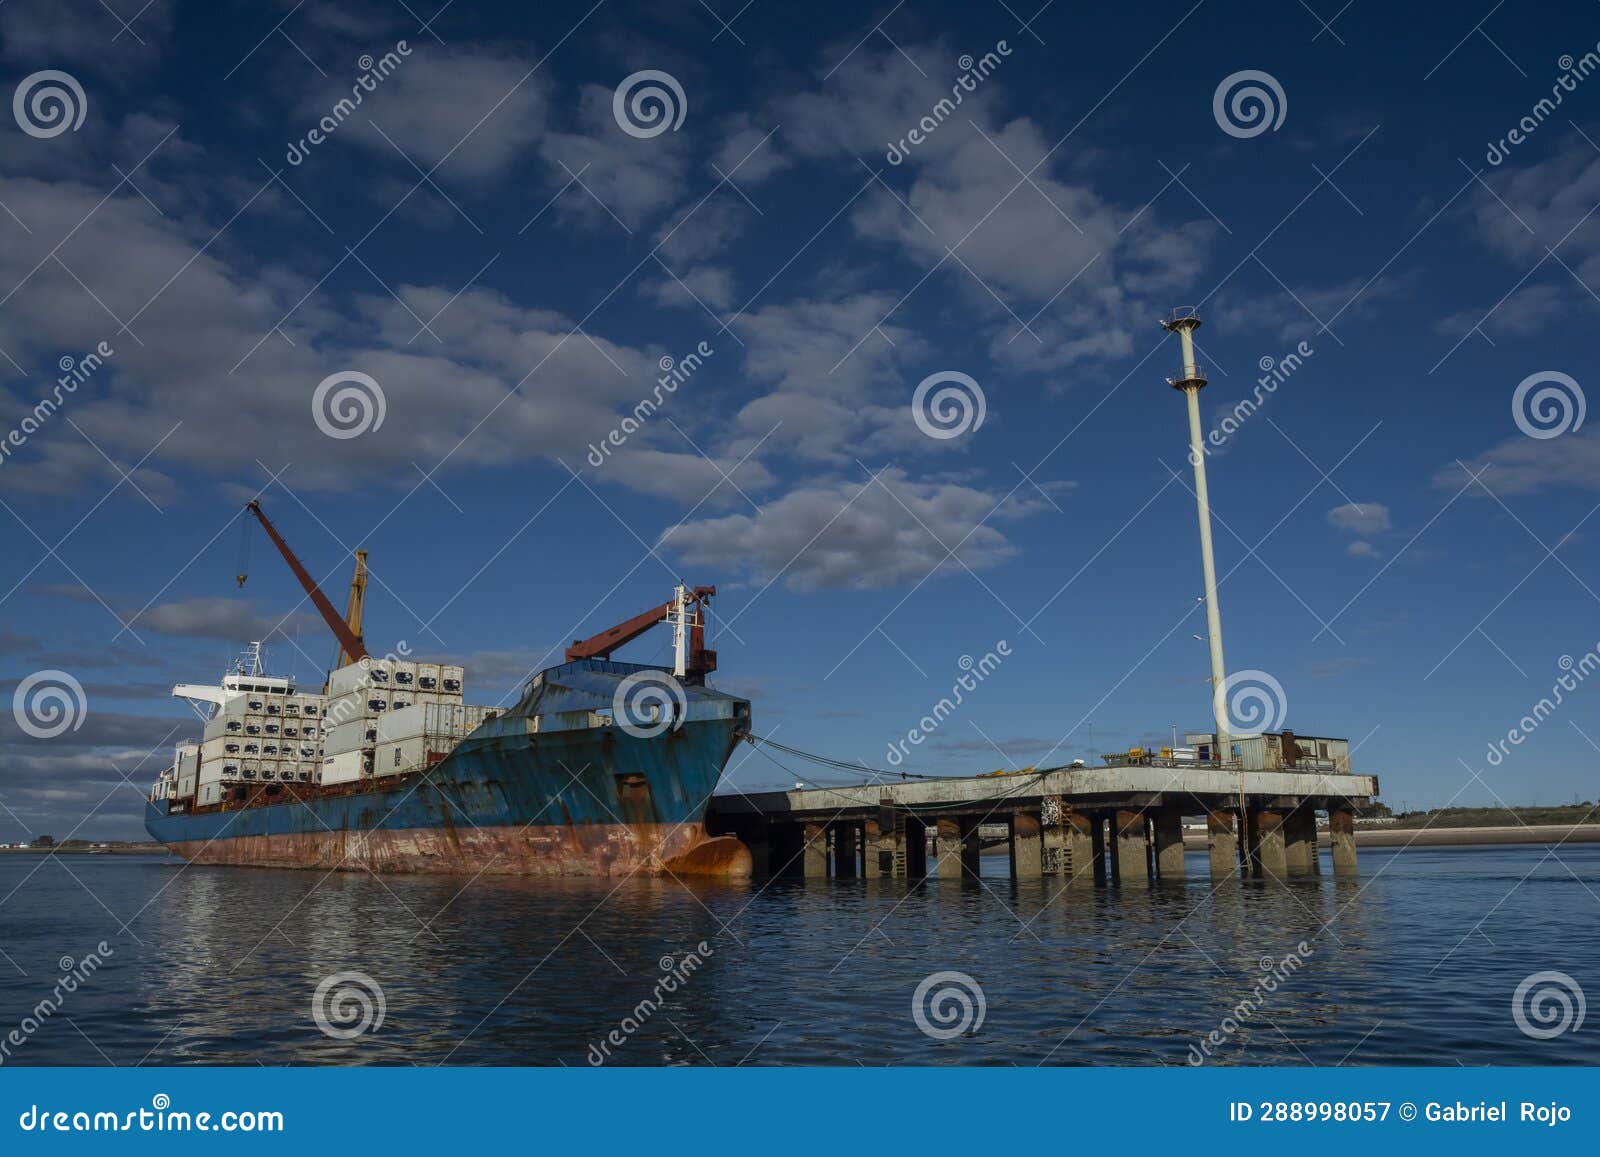 merchant ship moored in the port of san antonio este,